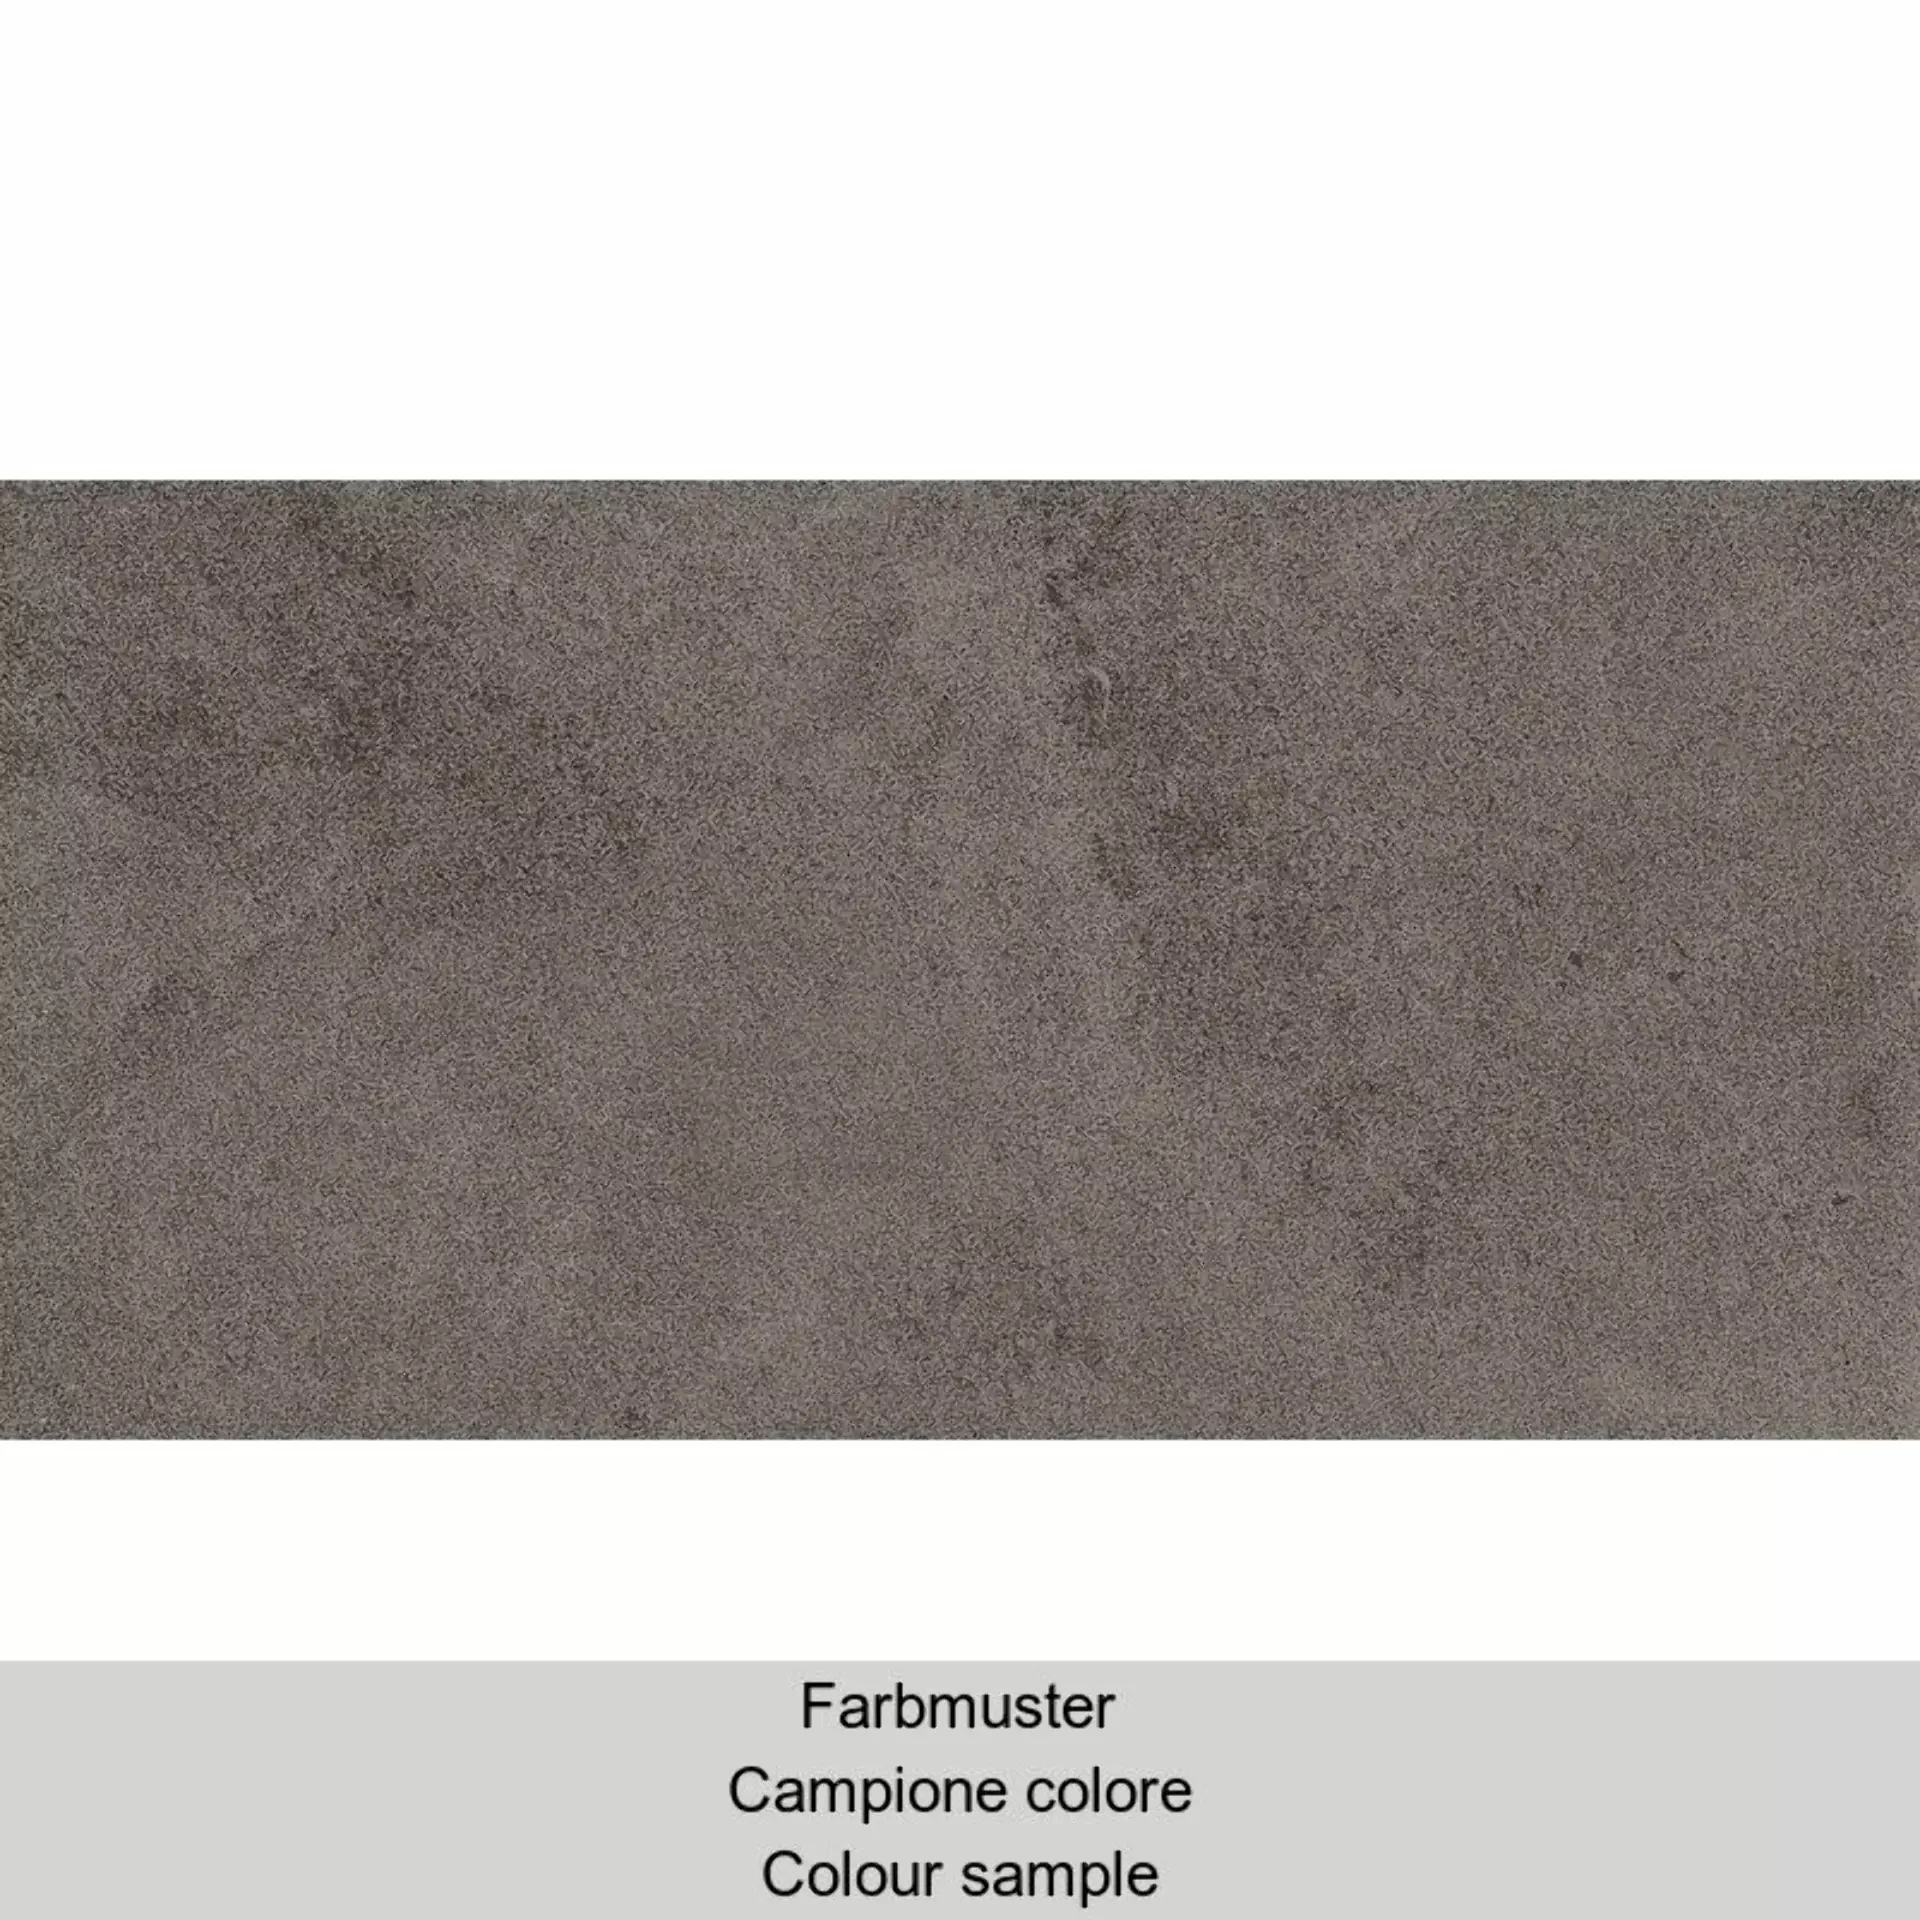 Casalgrande Padana Pietre Etrusche Vulci Naturale – Matt 7790188 naturale – matt 30x60cm rectified 10mm